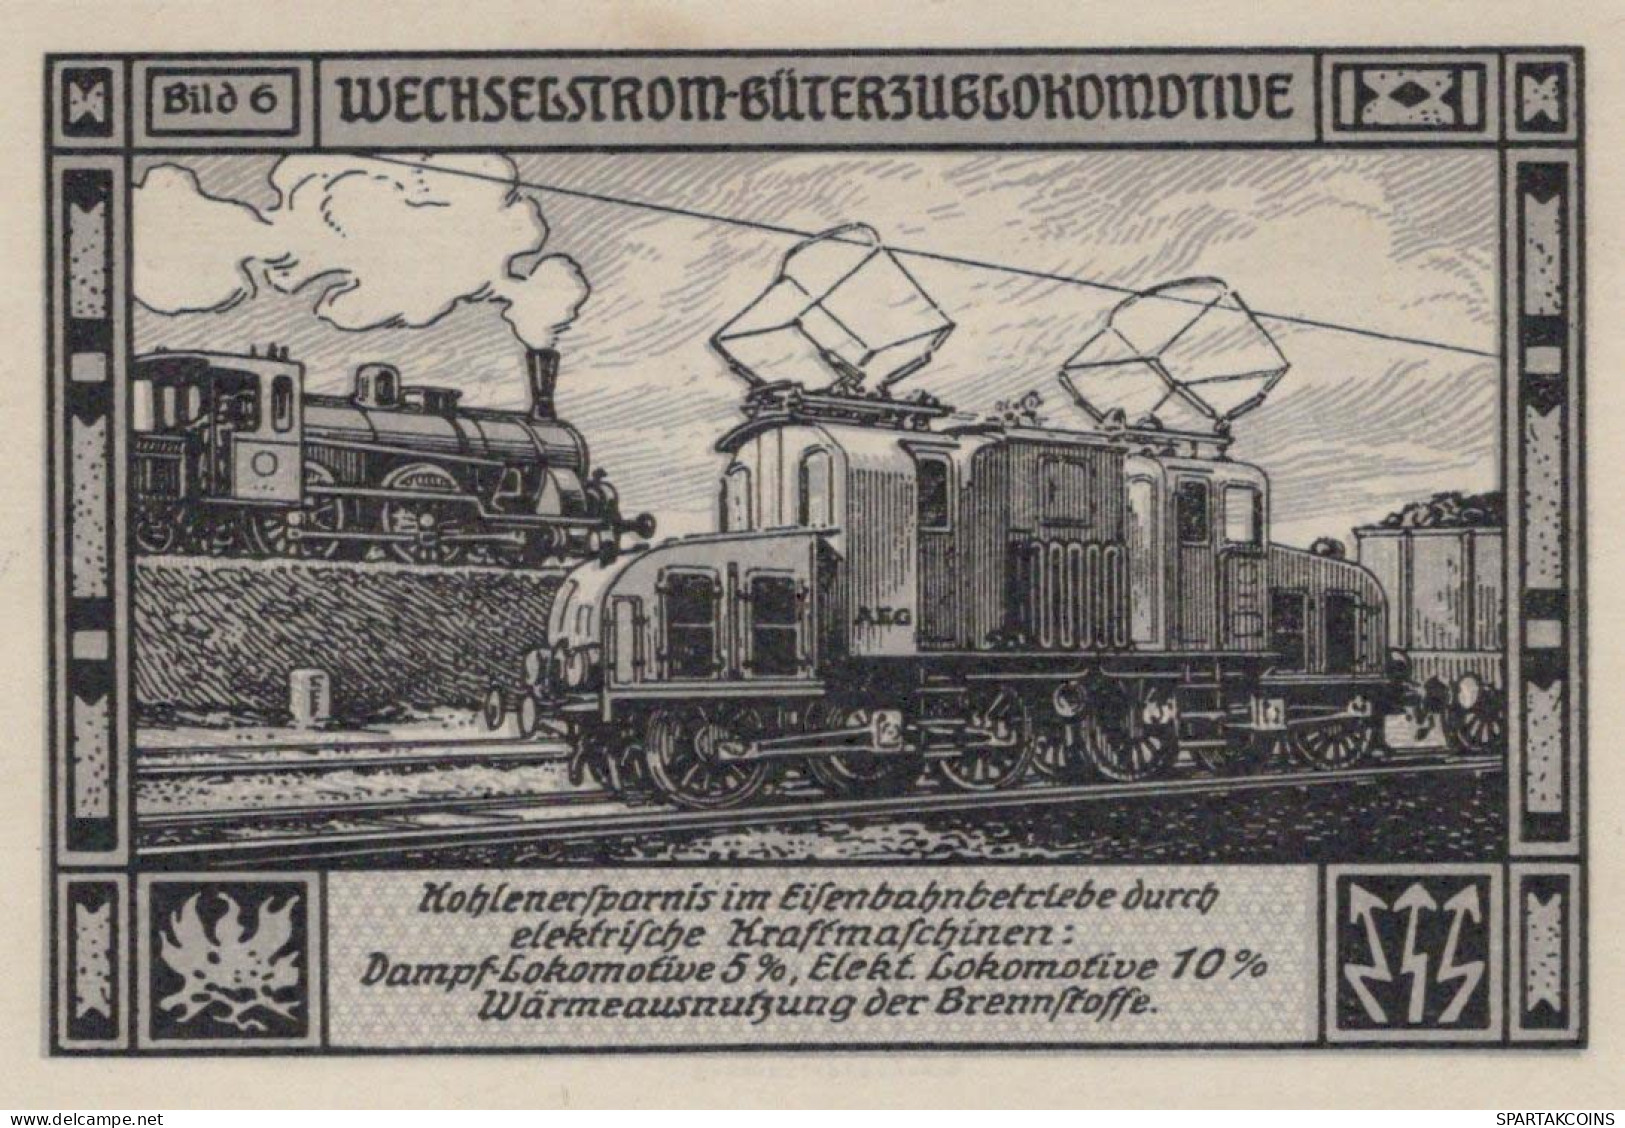 75 PFENNIG 1921 Stadt BITTERFIELD Westphalia UNC DEUTSCHLAND Notgeld #PA233 - [11] Emisiones Locales